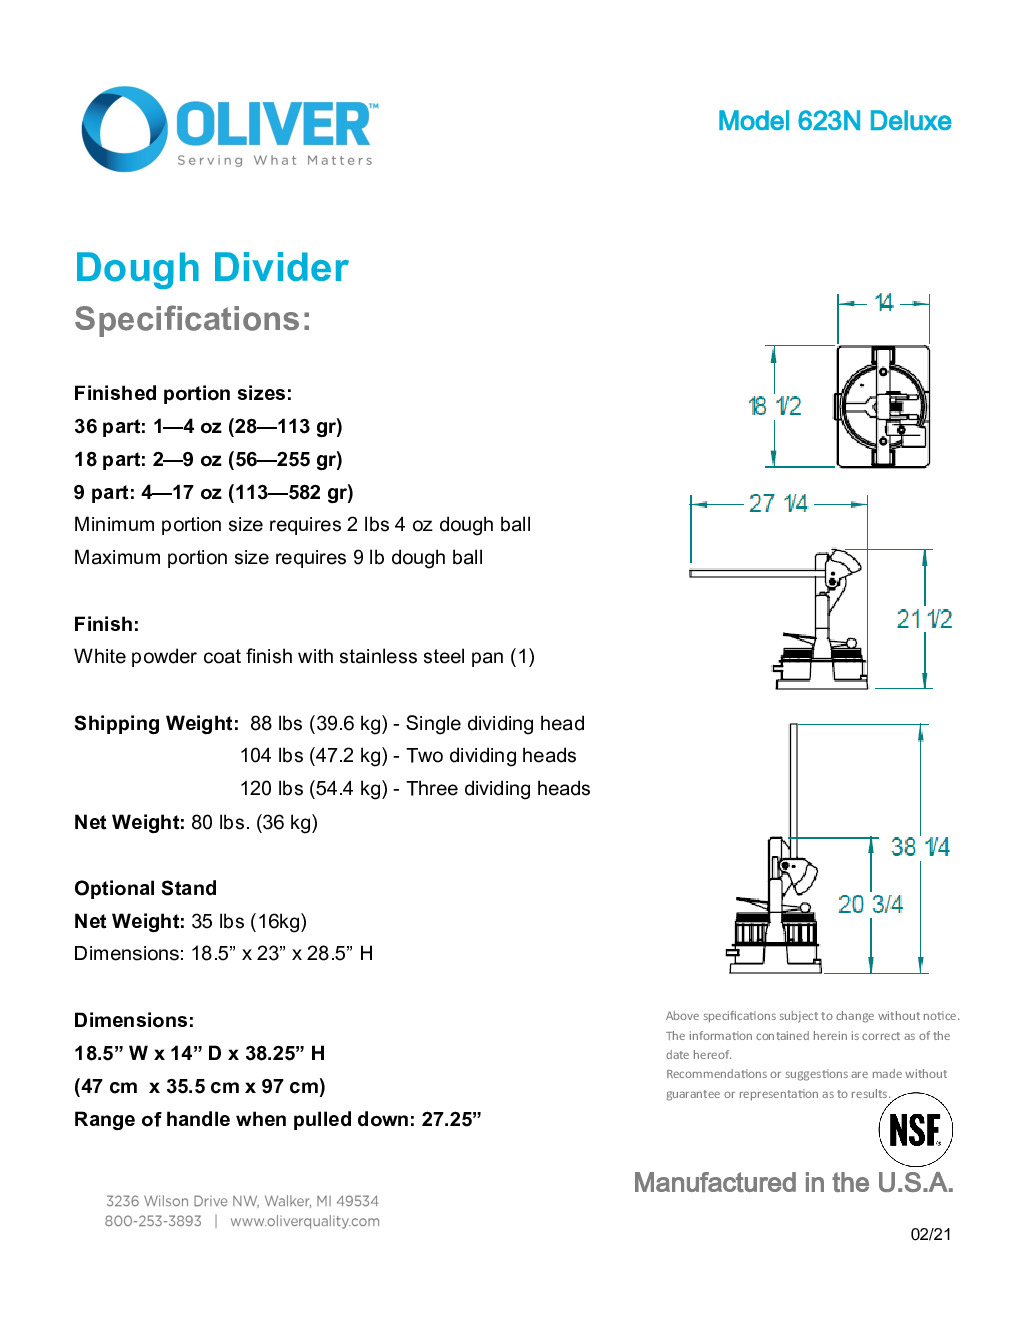 Oliver 623-N DELUXE-3 Dough Divider